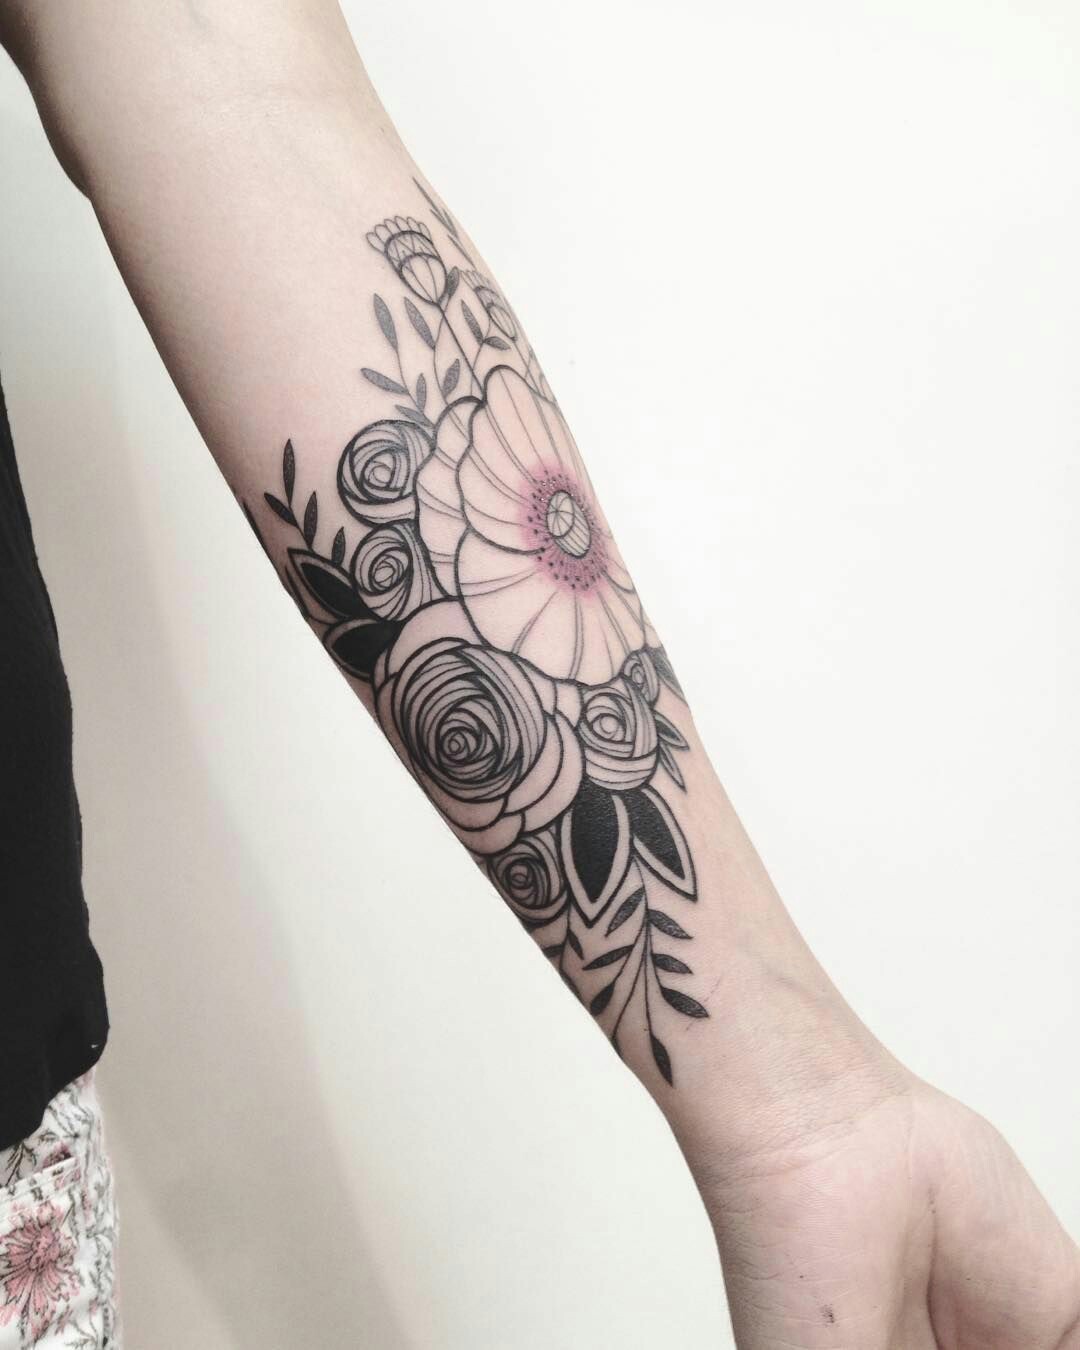 小臂花卉纹身小臂纹身图案参考罂粟花纹身玫瑰花纹身